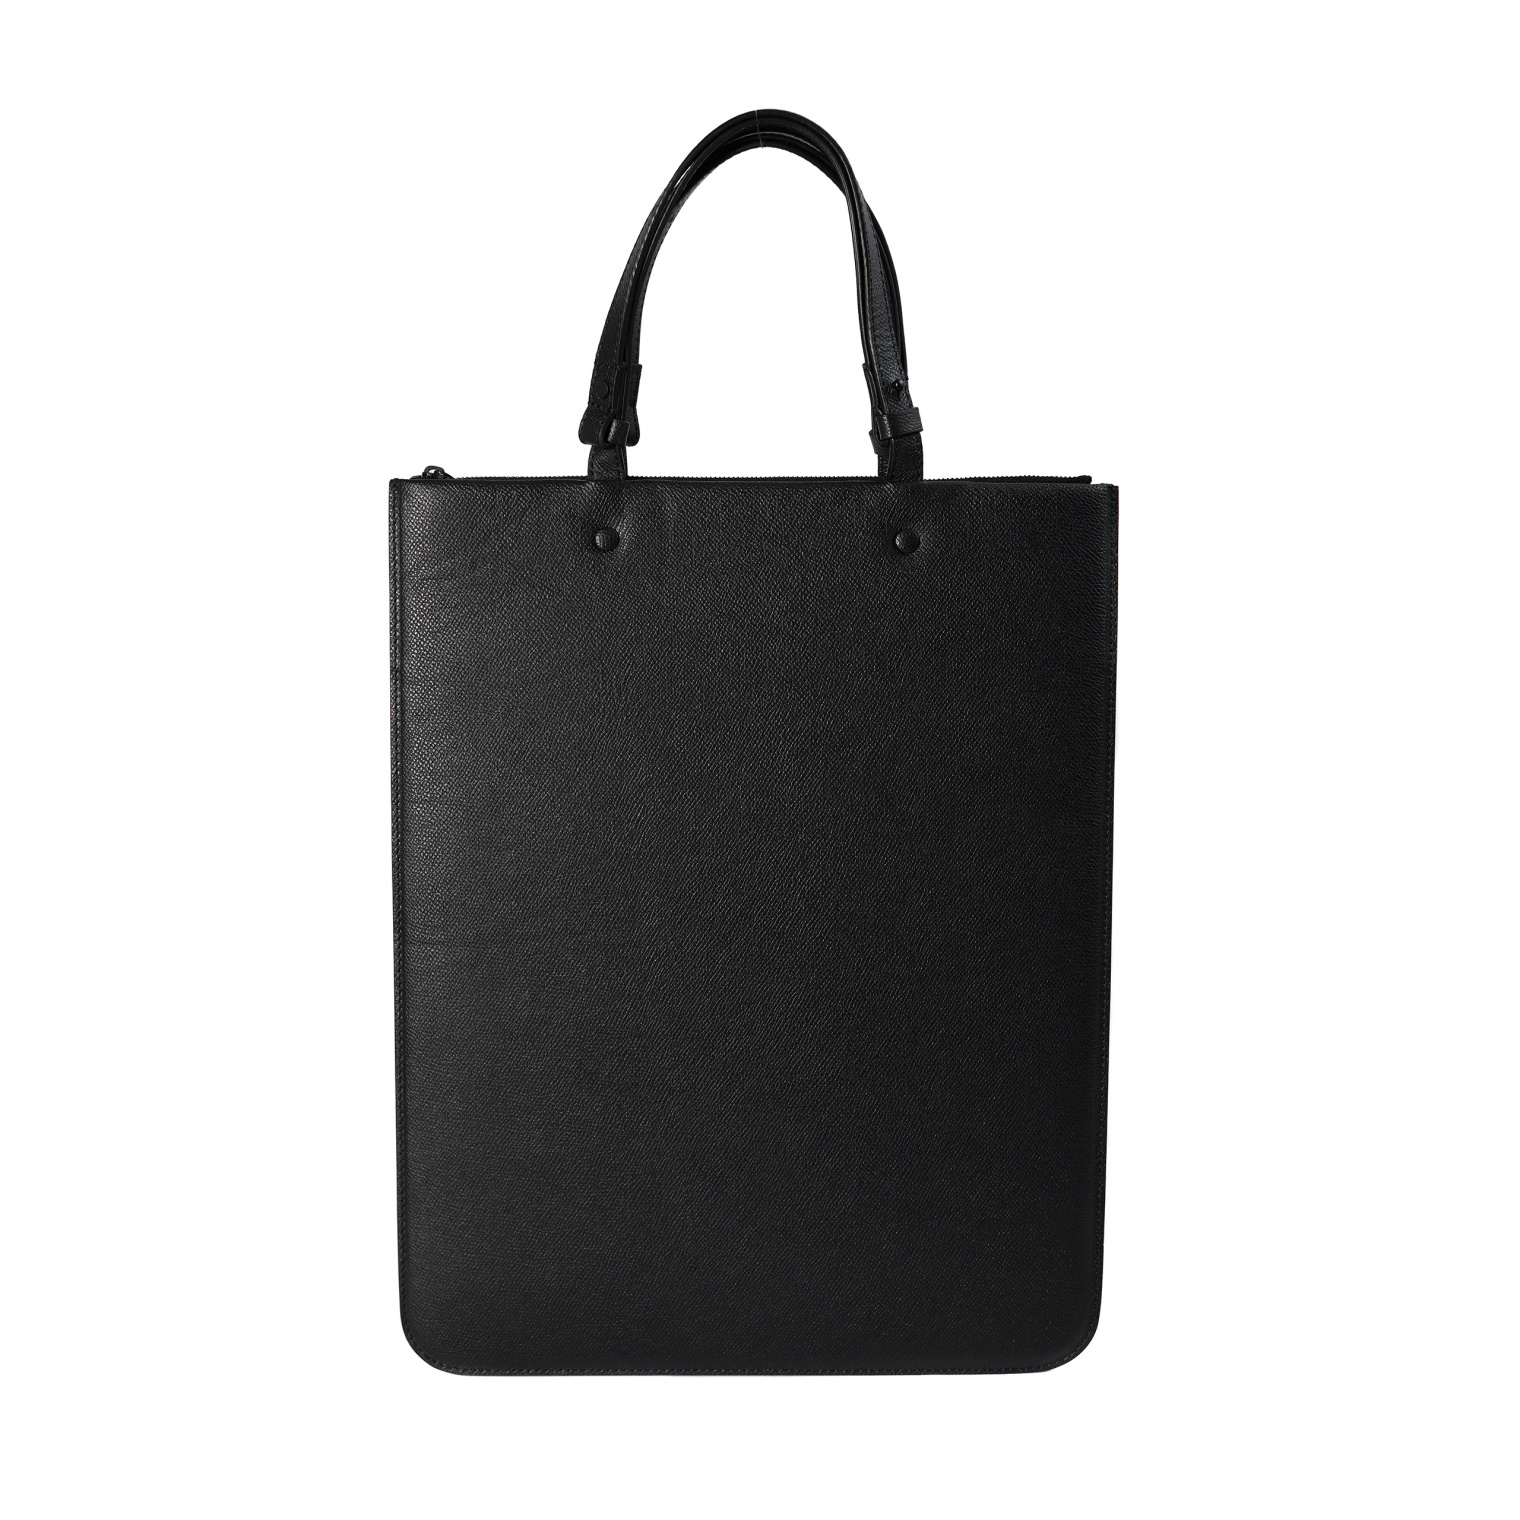 Maison Margiela Black leather bag